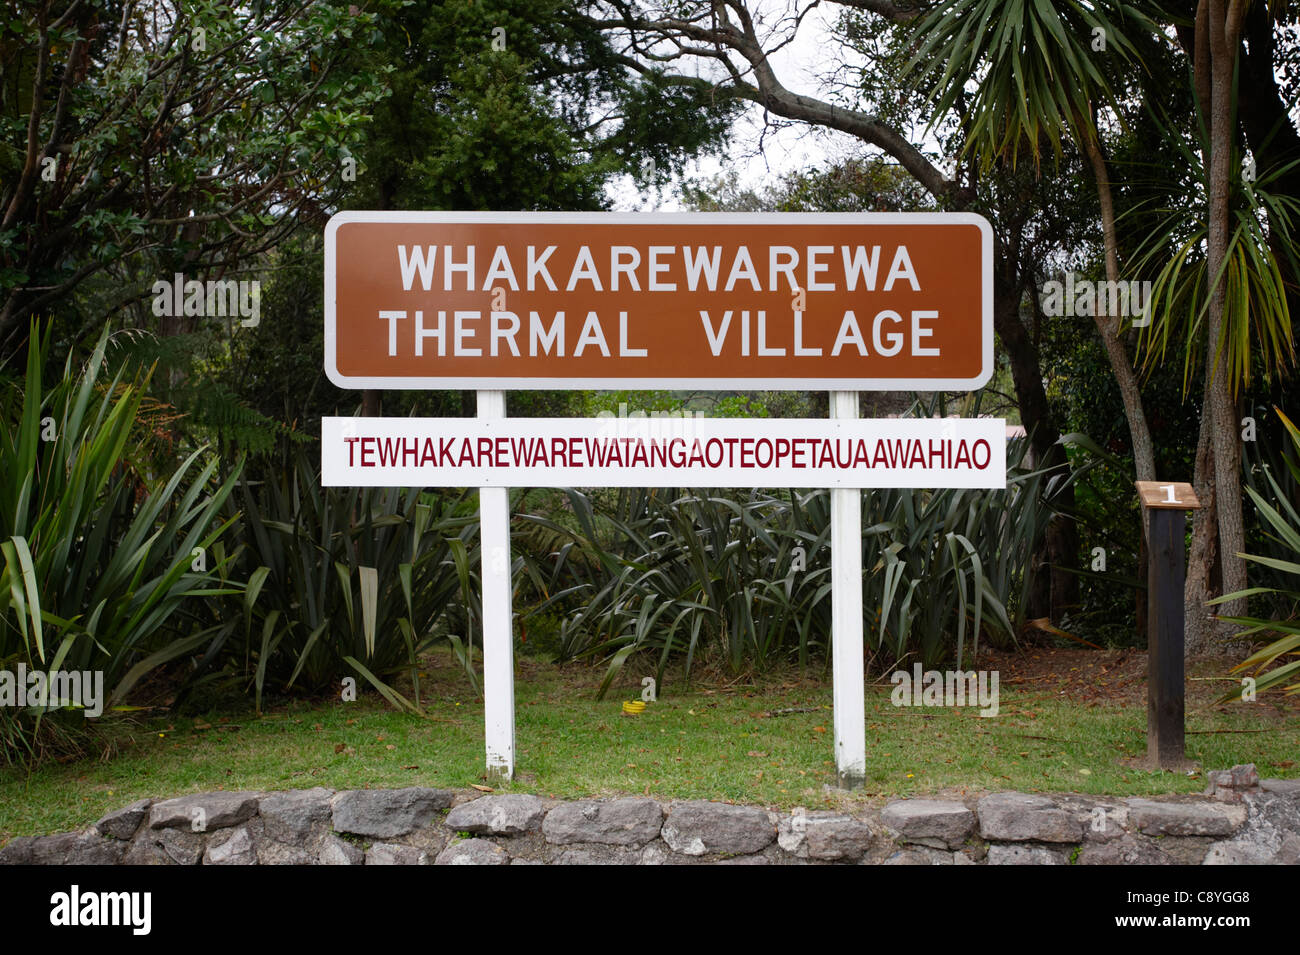 Village thermal de Whakarewarewa signe, île du Nord, Nouvelle-Zélande Banque D'Images